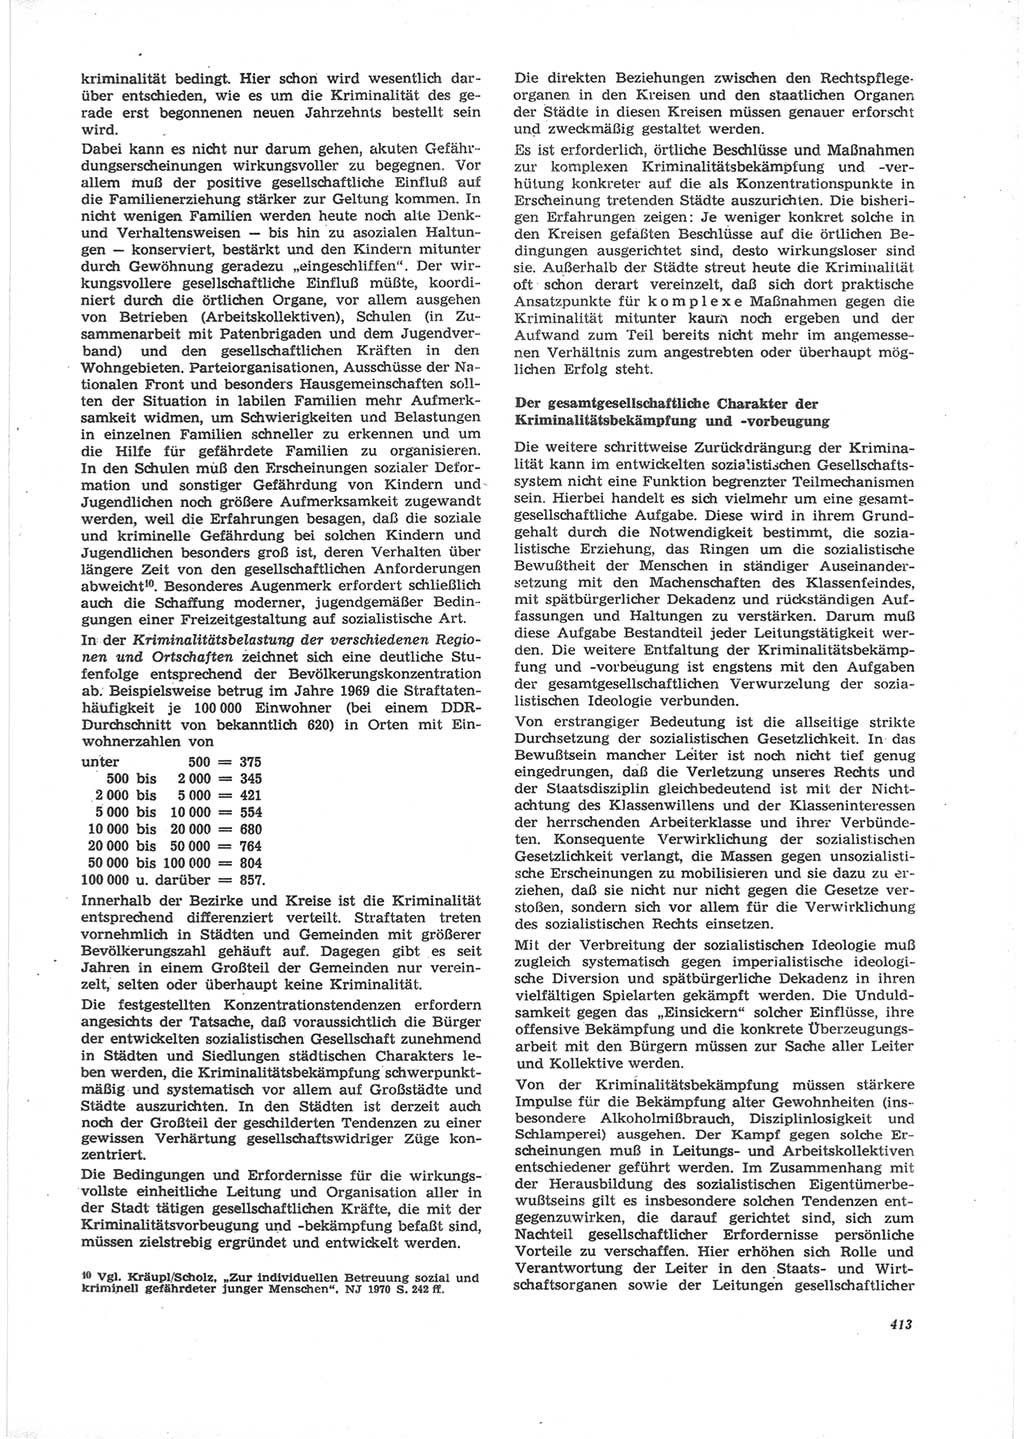 Neue Justiz (NJ), Zeitschrift für Recht und Rechtswissenschaft [Deutsche Demokratische Republik (DDR)], 24. Jahrgang 1970, Seite 413 (NJ DDR 1970, S. 413)